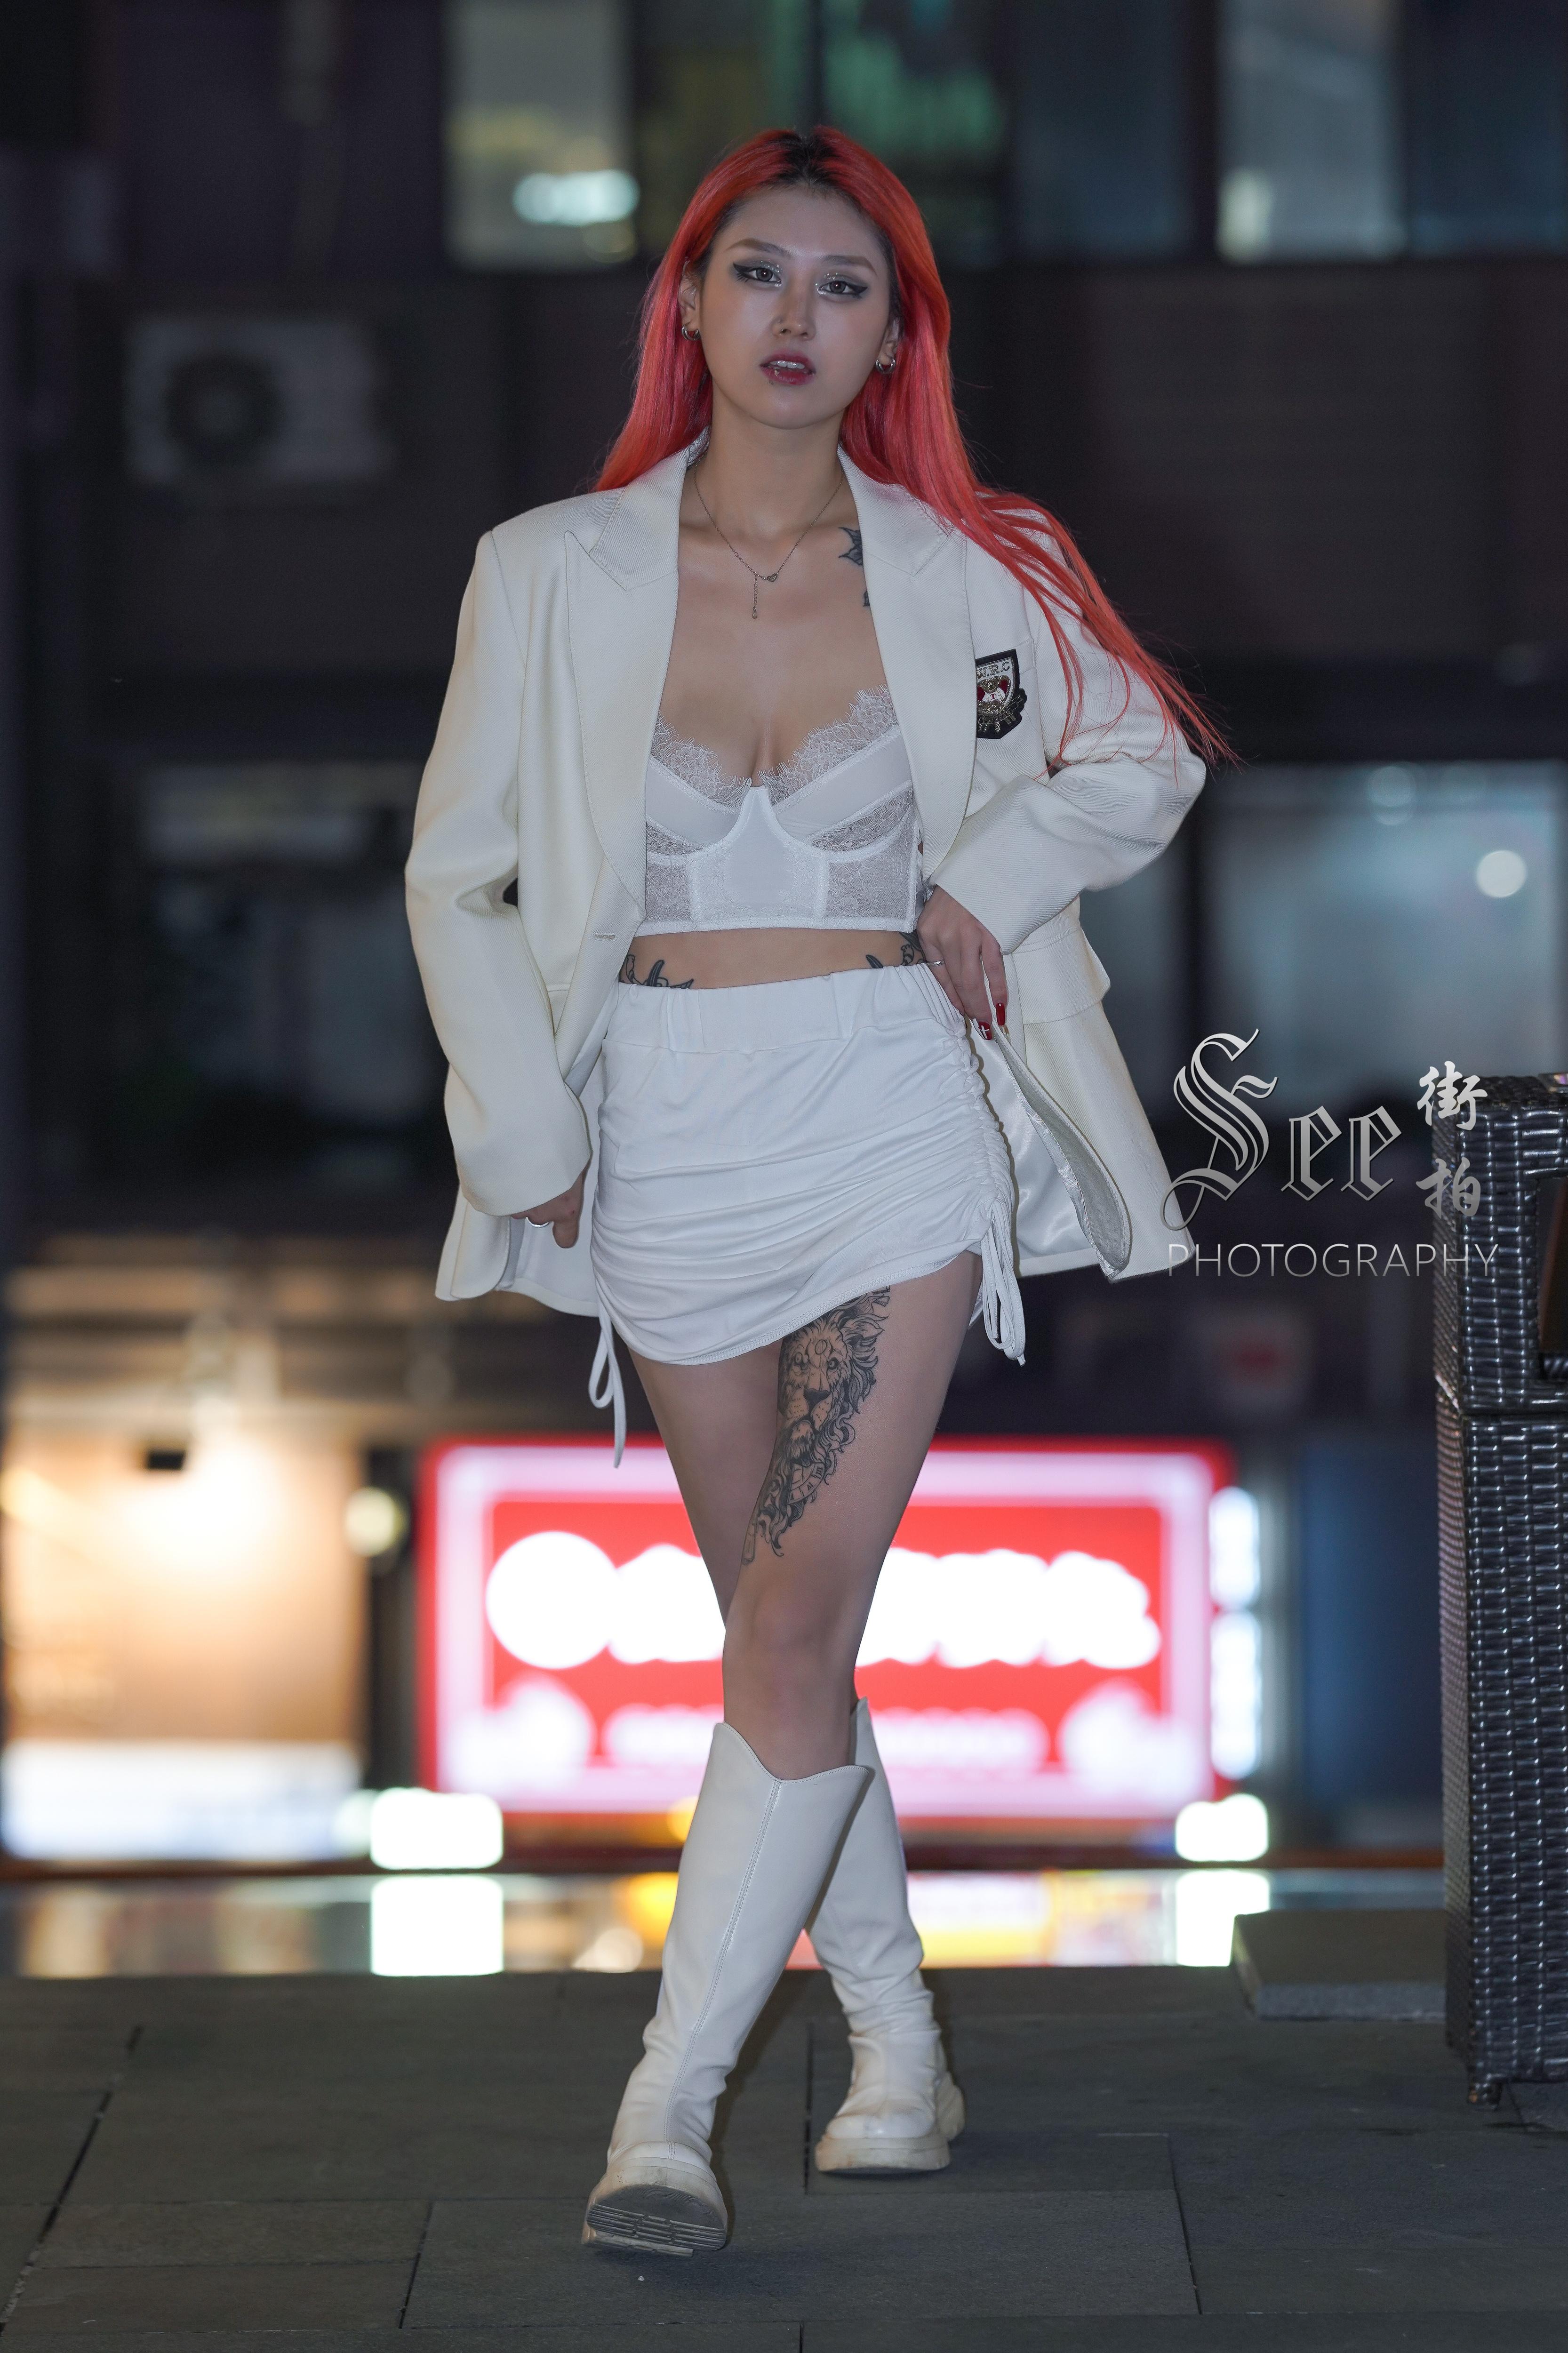 SEE街拍 魅力迷人的纹身少妇 白色短裙加蕾丝内衣性感妖娆,1 (1)